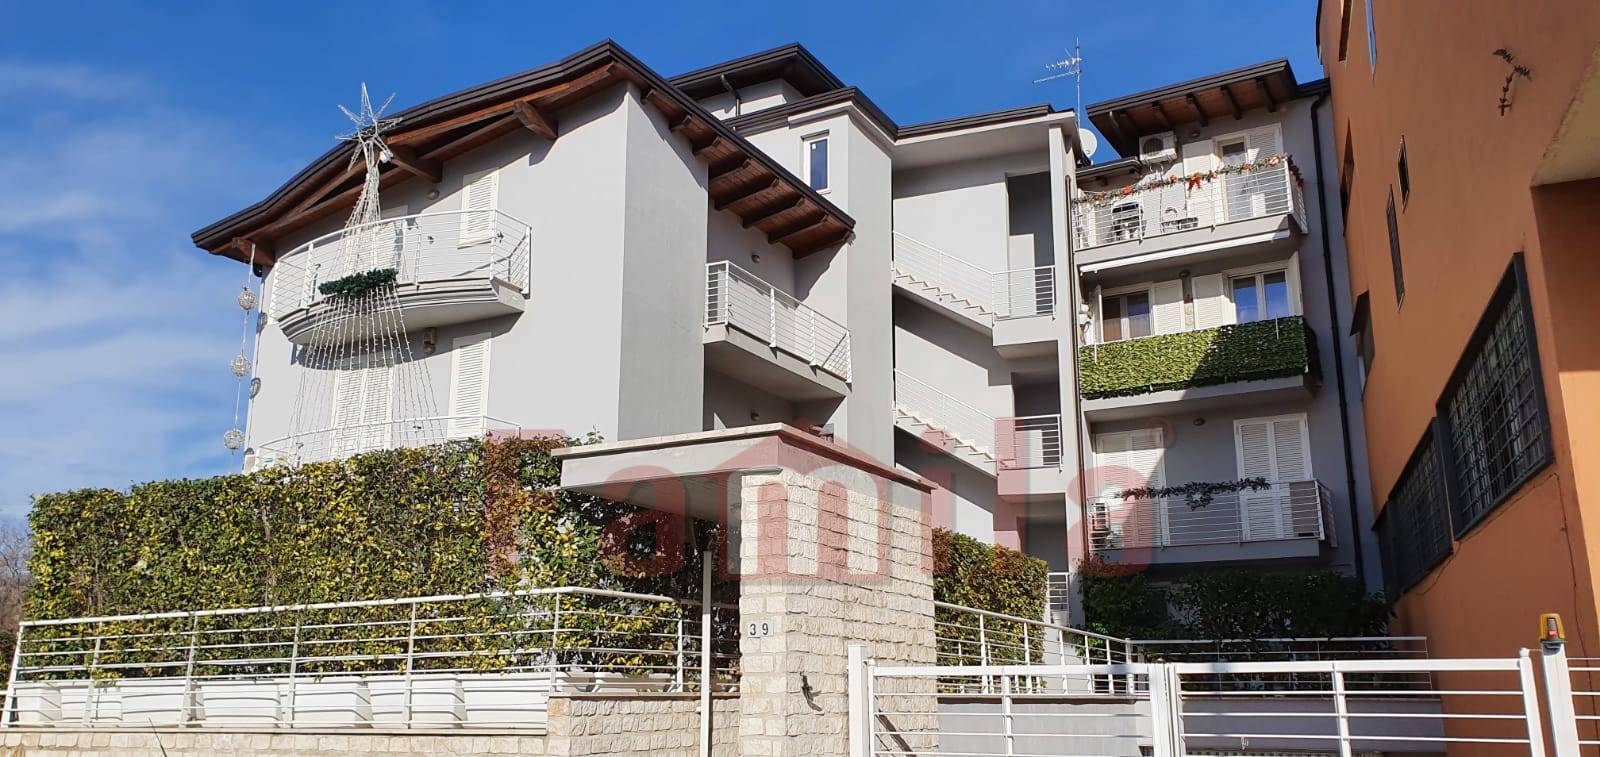 Appartamento in vendita a Quadrelle, 4 locali, prezzo € 101.000 | CambioCasa.it